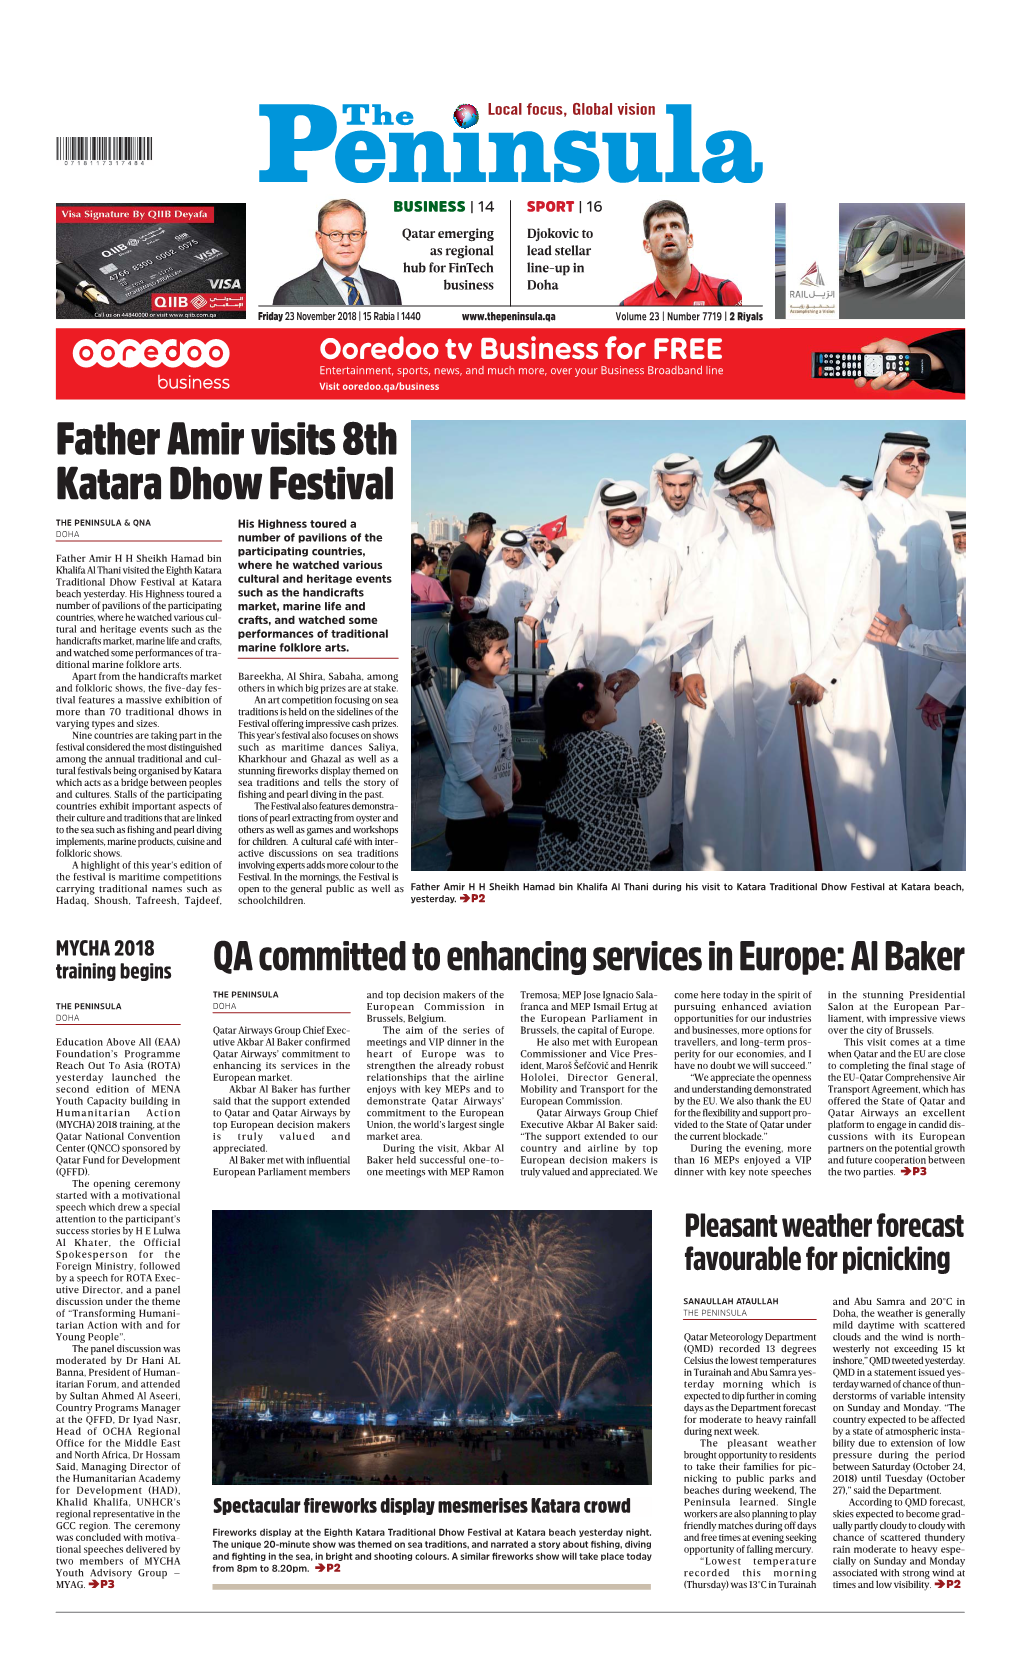 Father Amir Visits 8Th Katara Dhow Festival